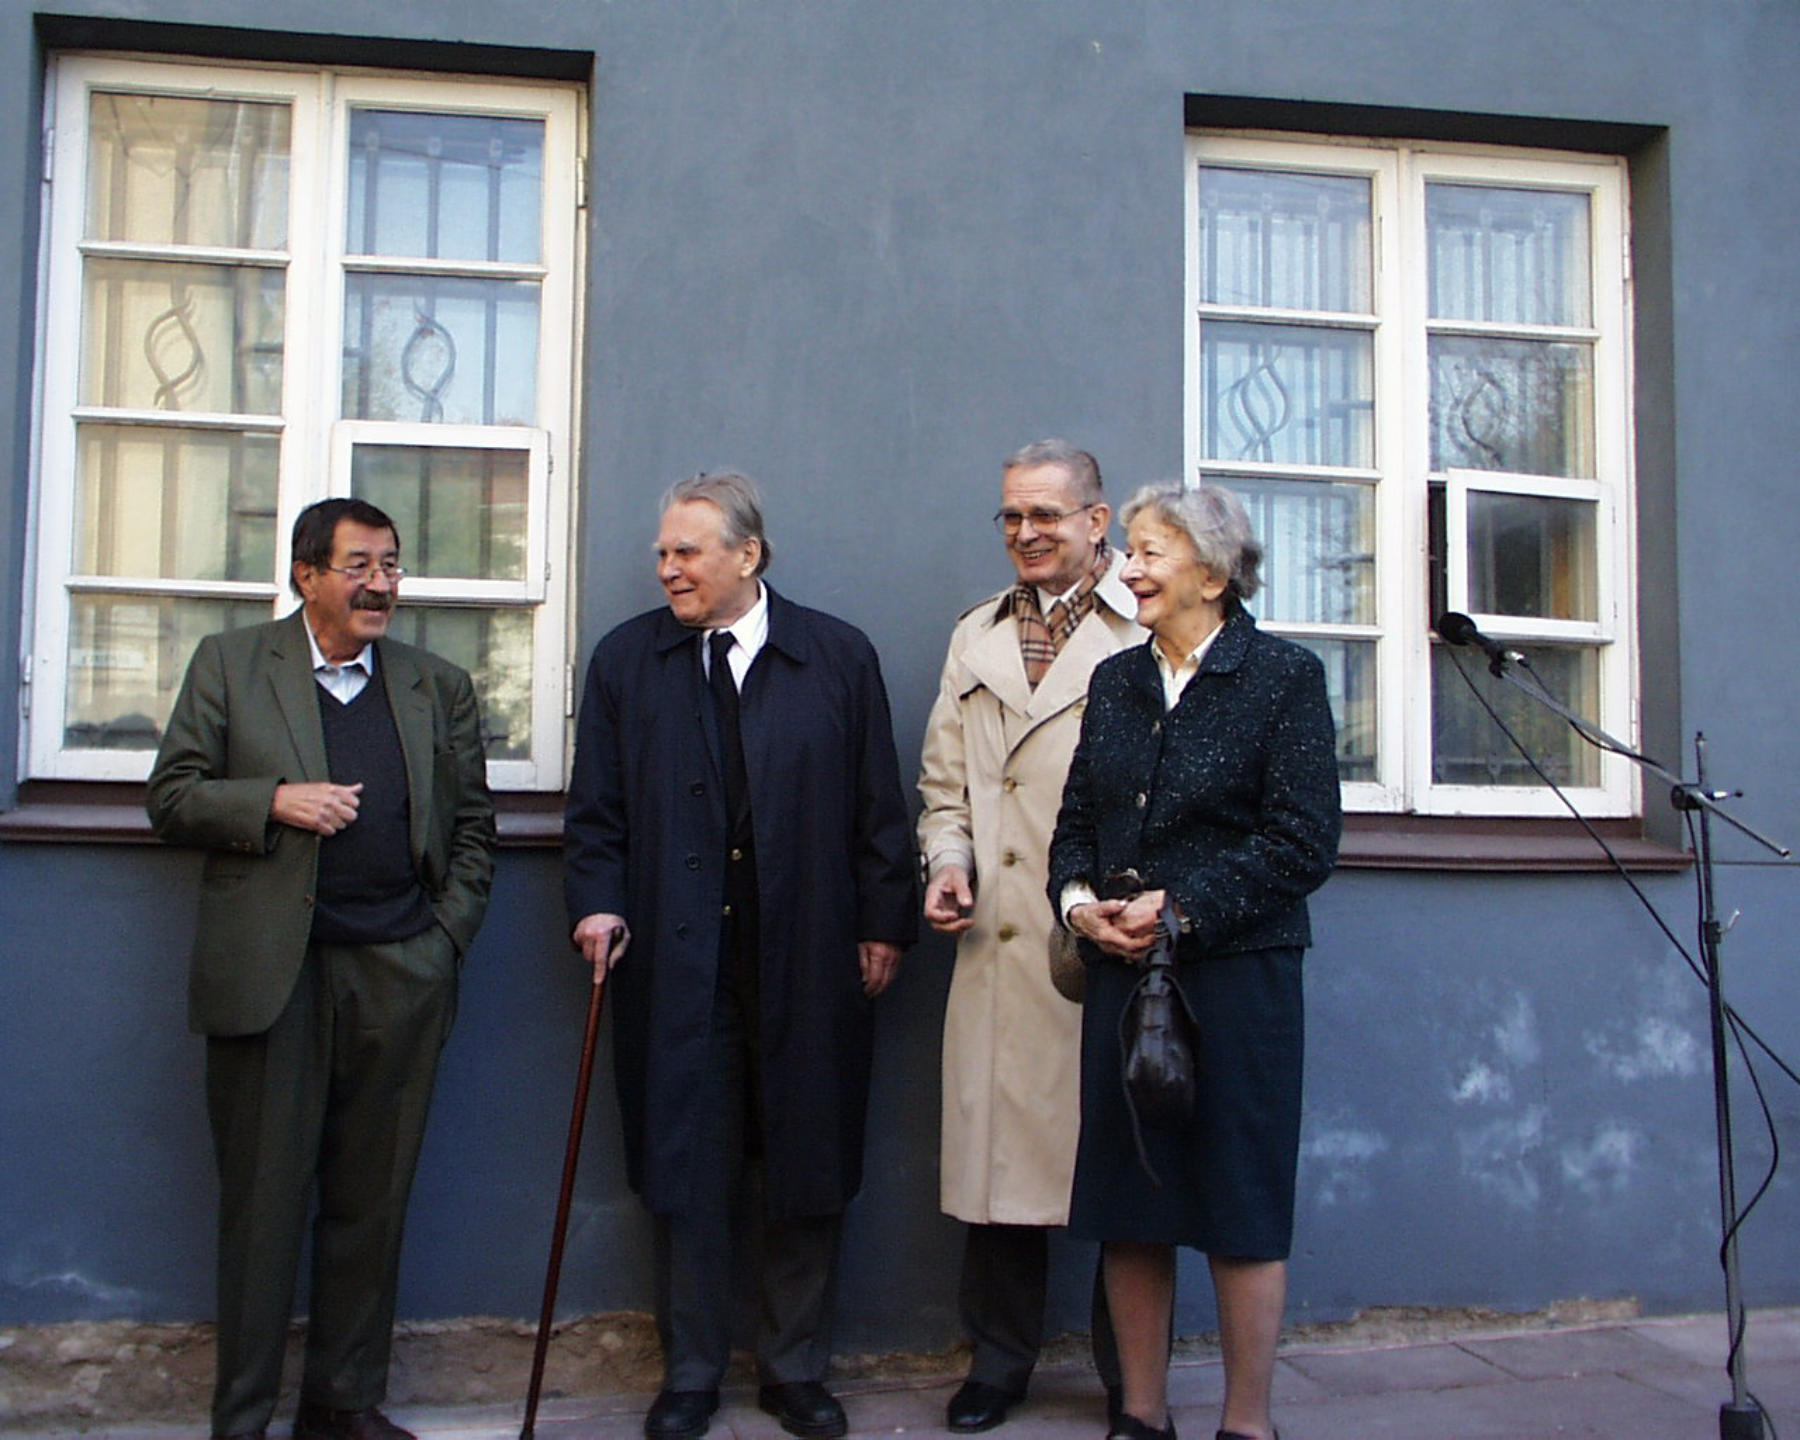 W październiku 2000 r. Wilno stało się miejscem wyjątkowego spotkania trzech laureatów Nagrody Nobla. Na zdjęciu od lewej: Günter Grass, Czesław Miłosz, Tomas Venclova (tłumacz i krytyk literacki), Wisława Szymborska.